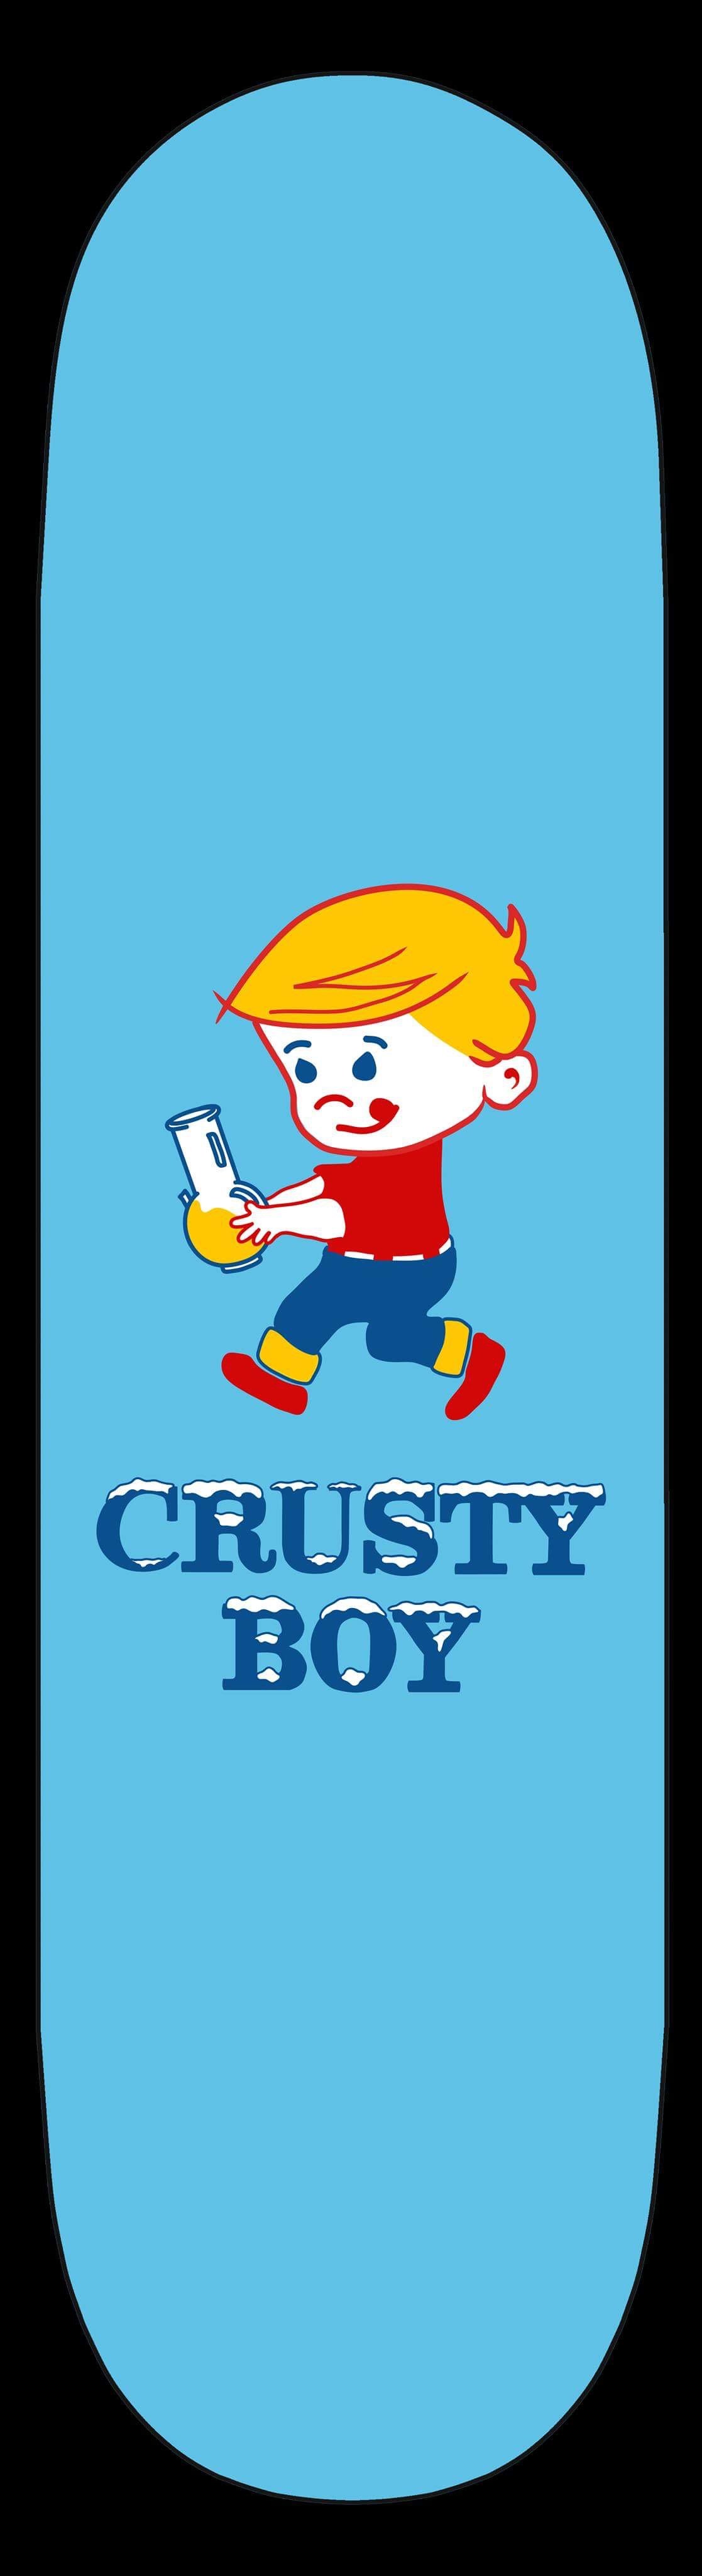 Image of Crusty Boy